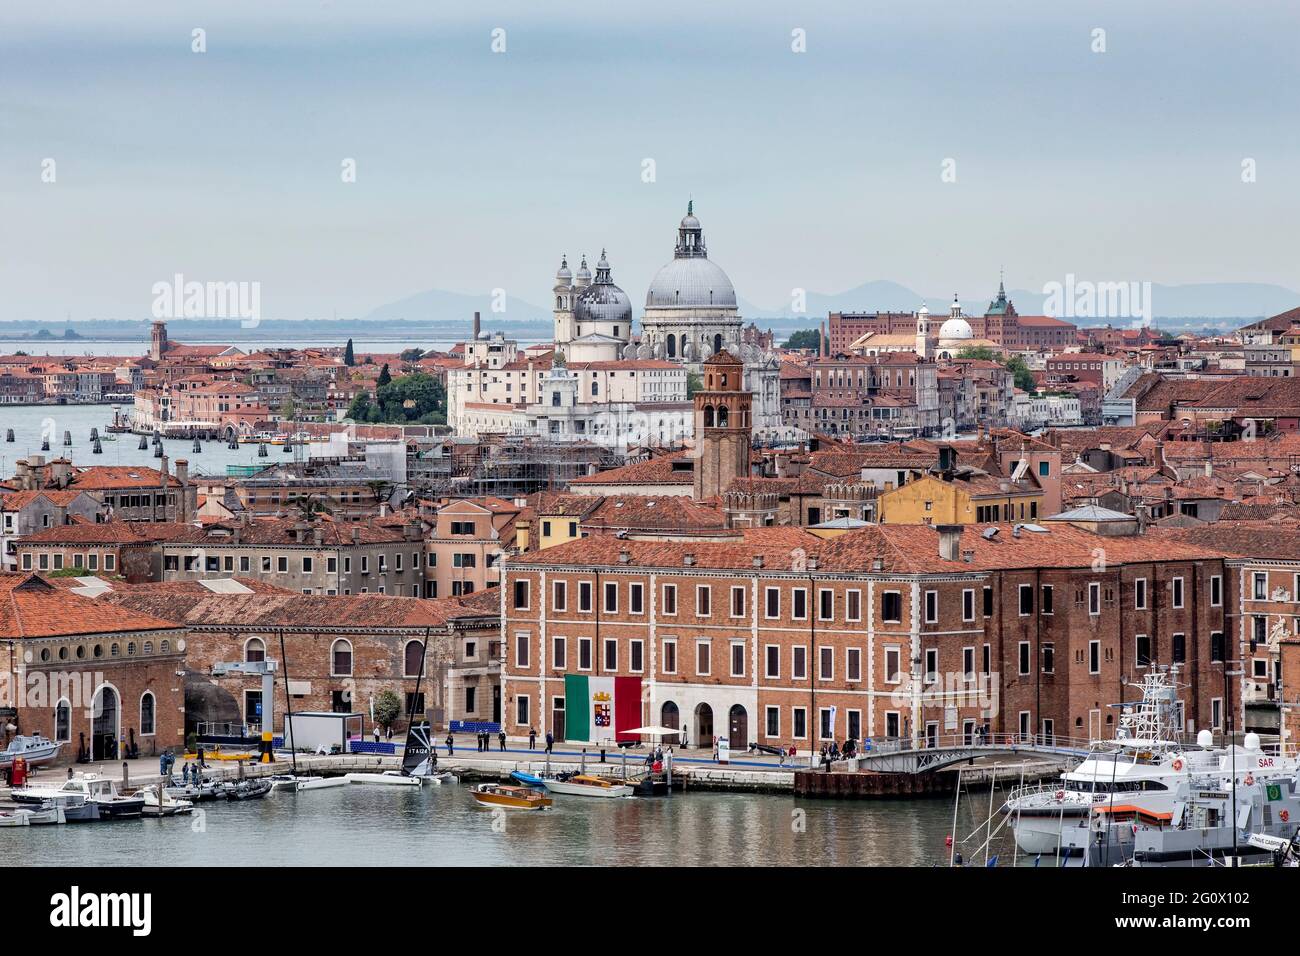 Vue panoramique détail complet de la ville des Arts de Venise Italie de la tour Arsenale dans le salon nautique édition 2021 29 mai 2021 Banque D'Images